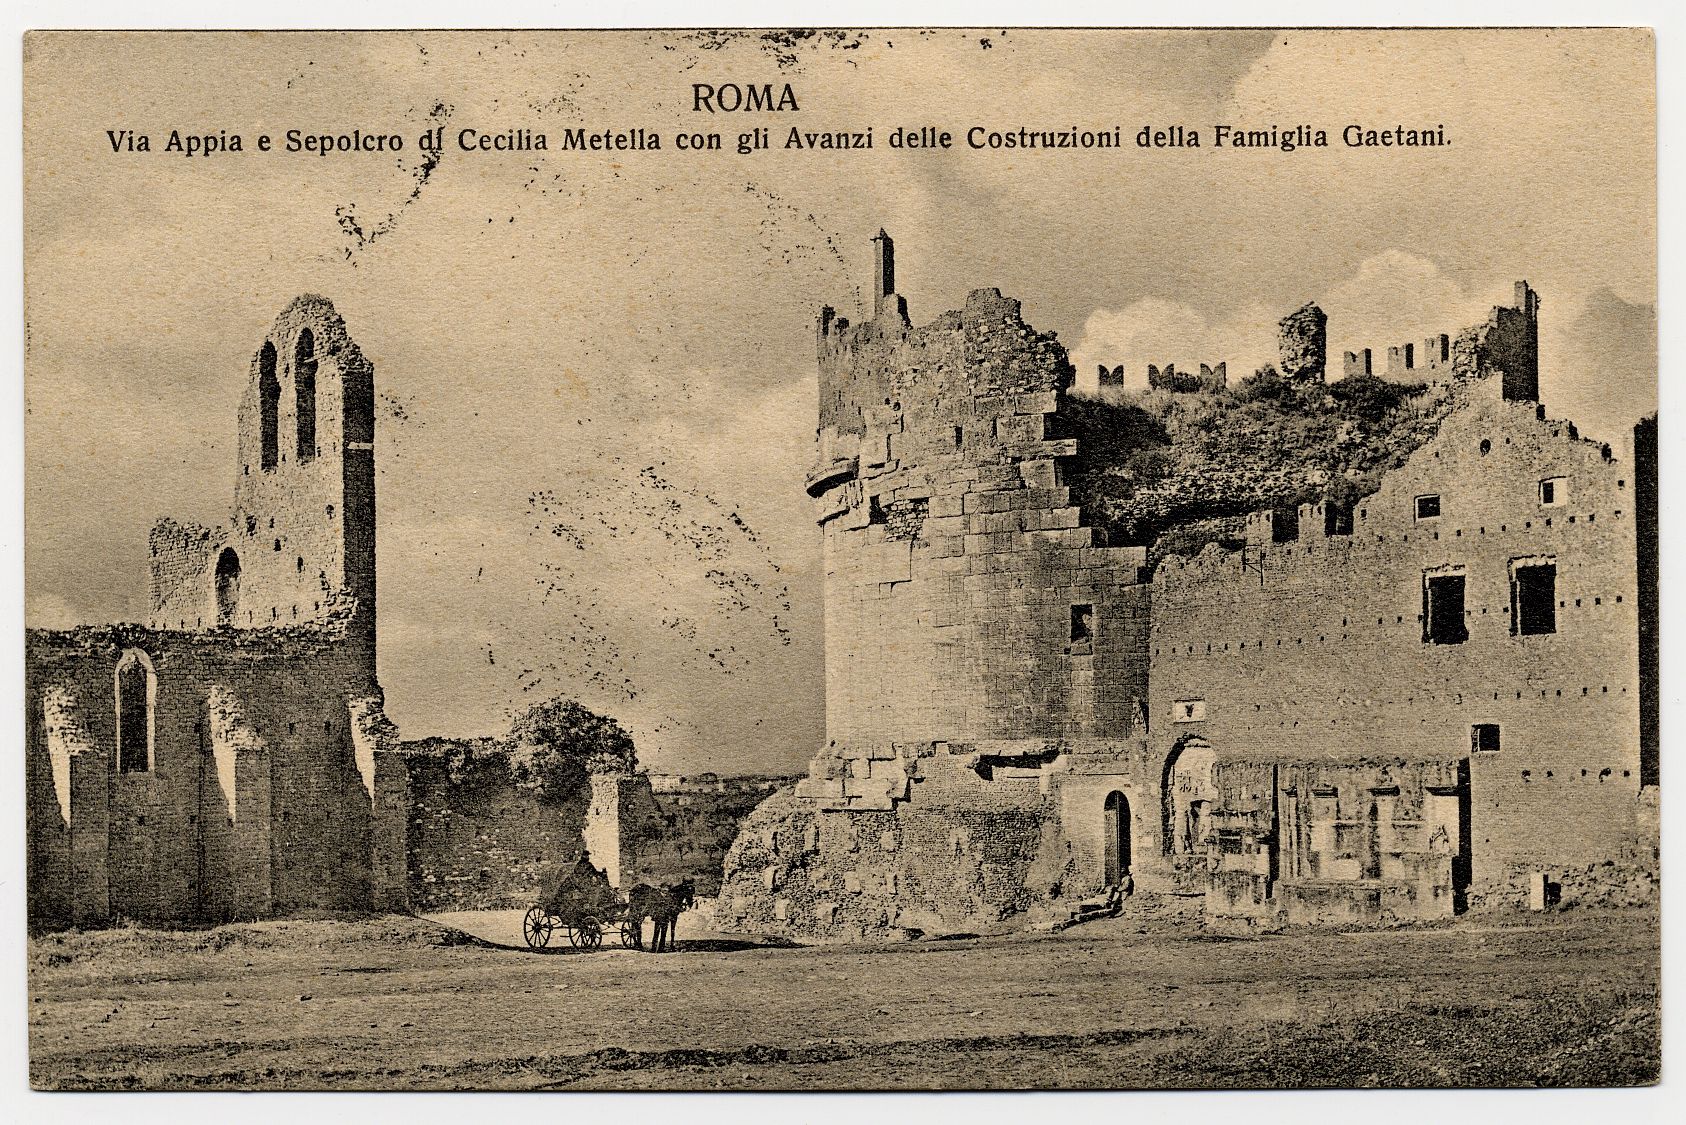 Cartolina con immagine della Tomba di Cecilia Metella e del Castrum Caetani